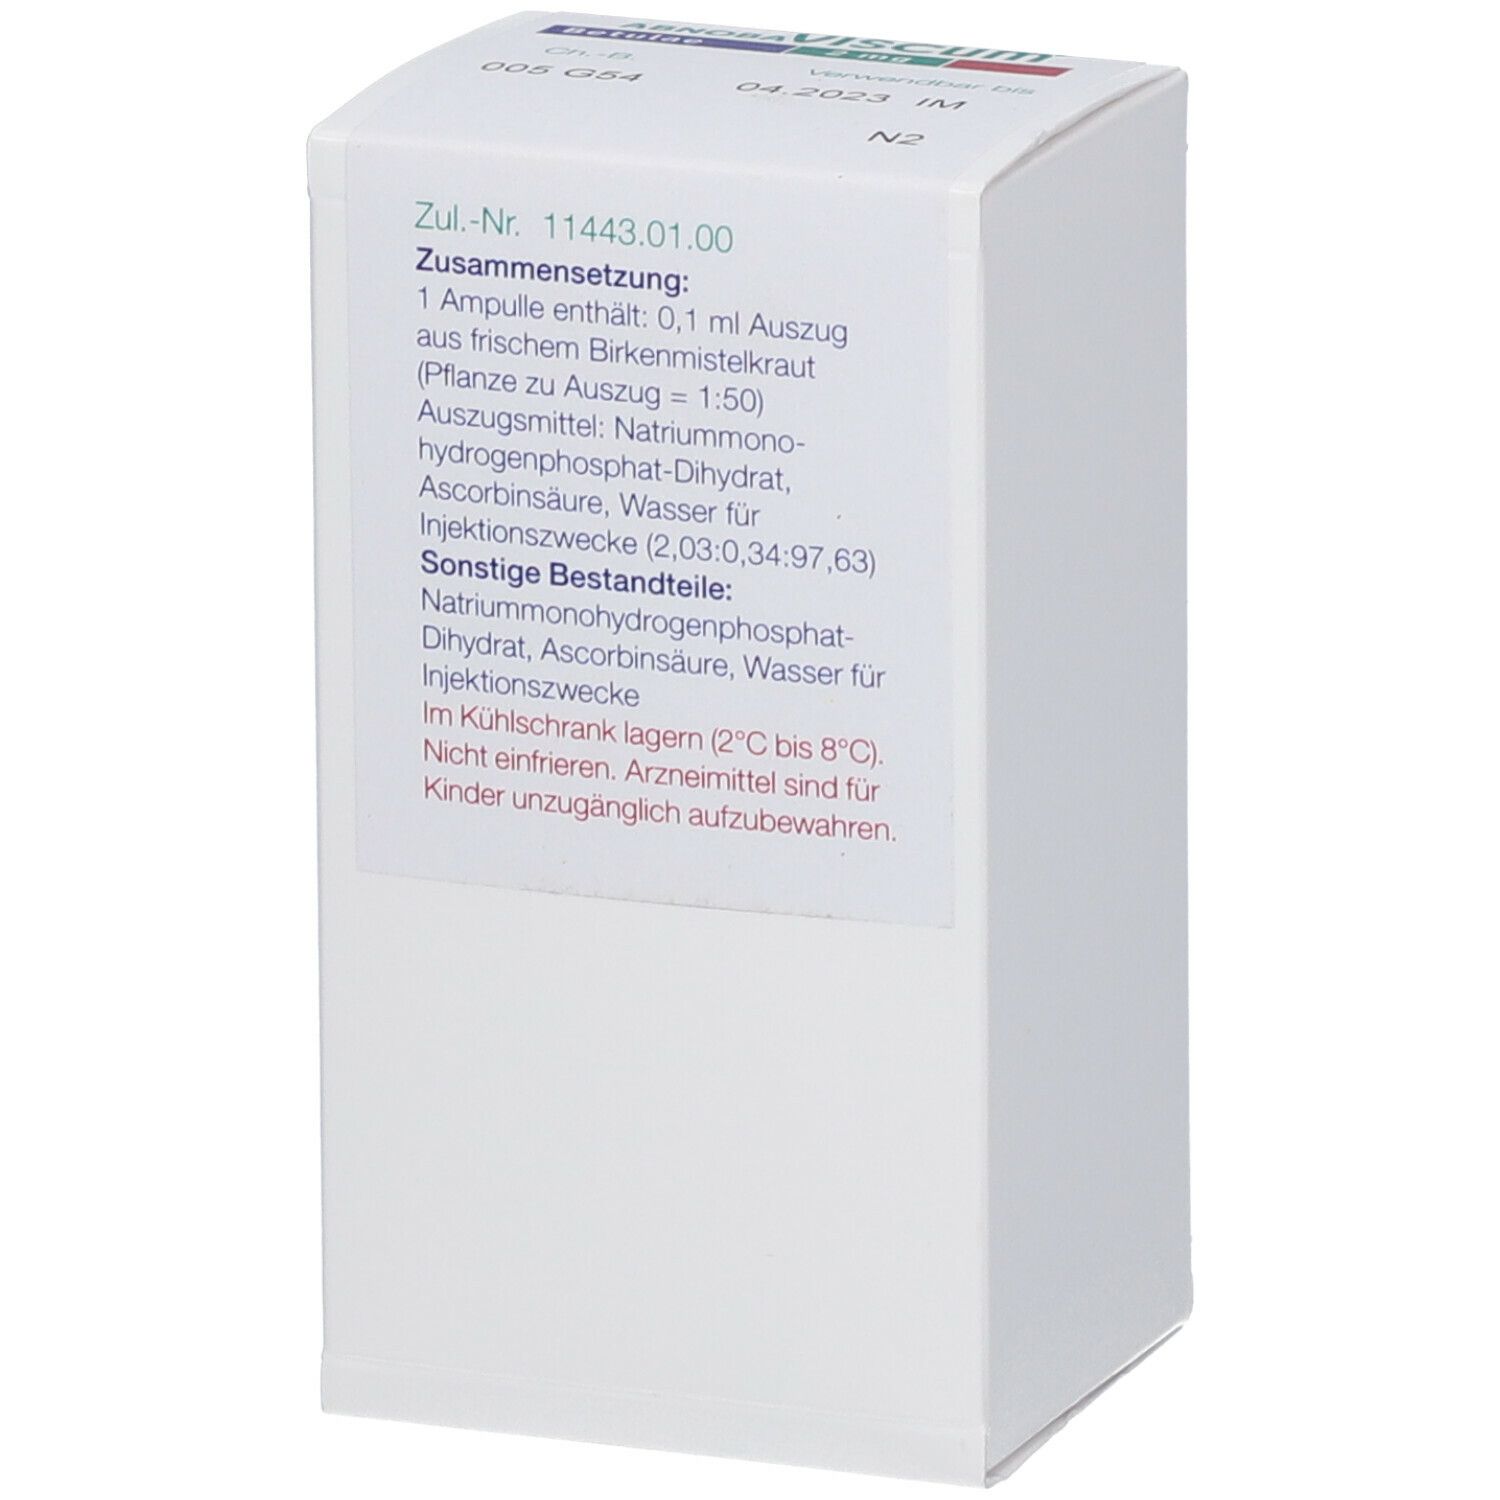 abnobaVISCUM® Betulae 2 mg Ampullen